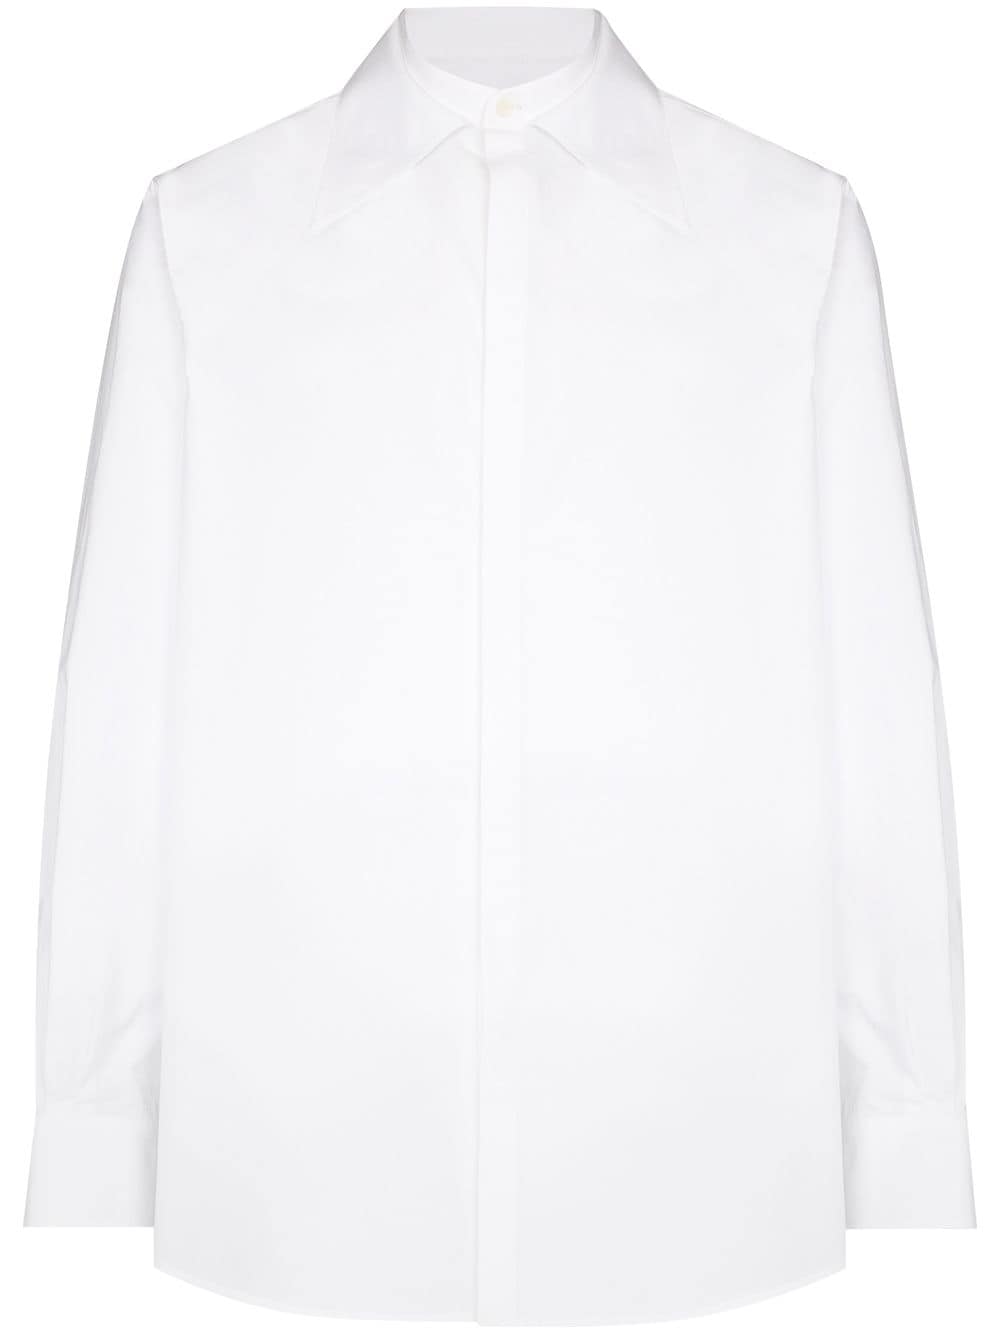 Valentino Garavani oversize collar shirt - White von Valentino Garavani